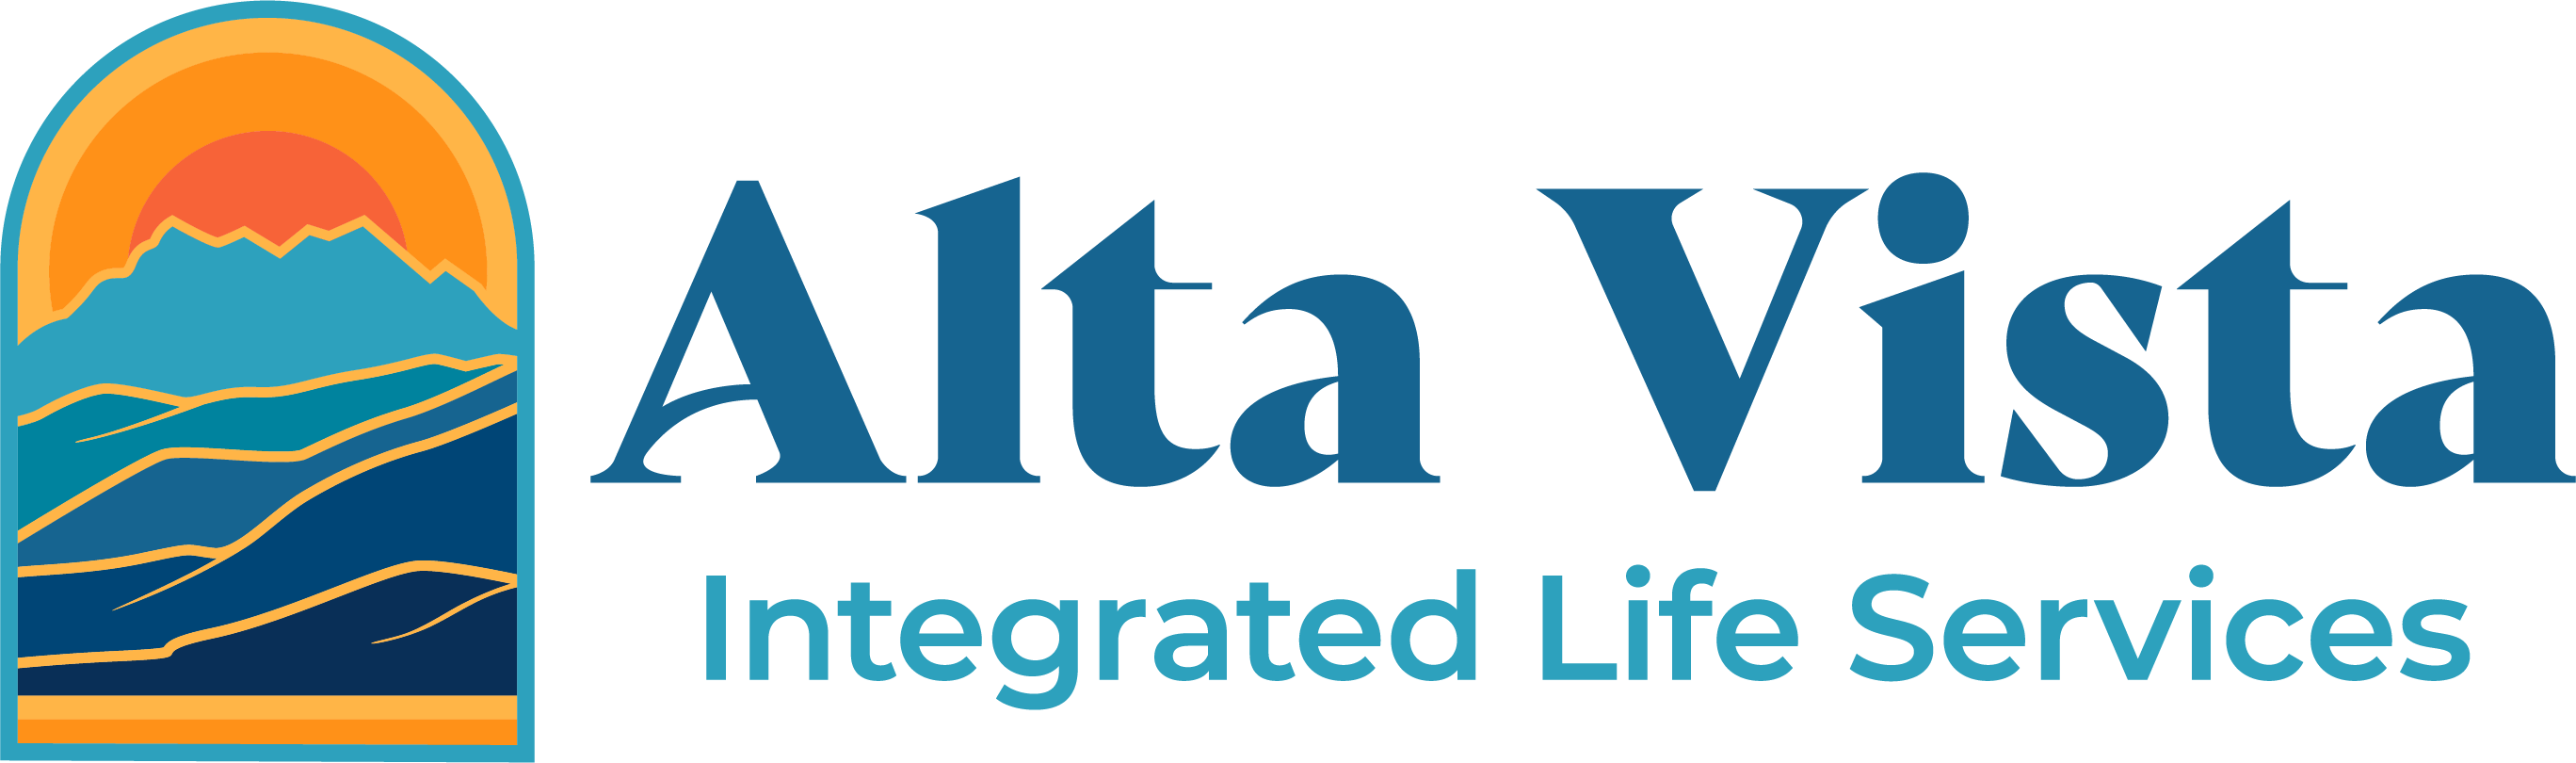 Alta Vista Integrated Life Services